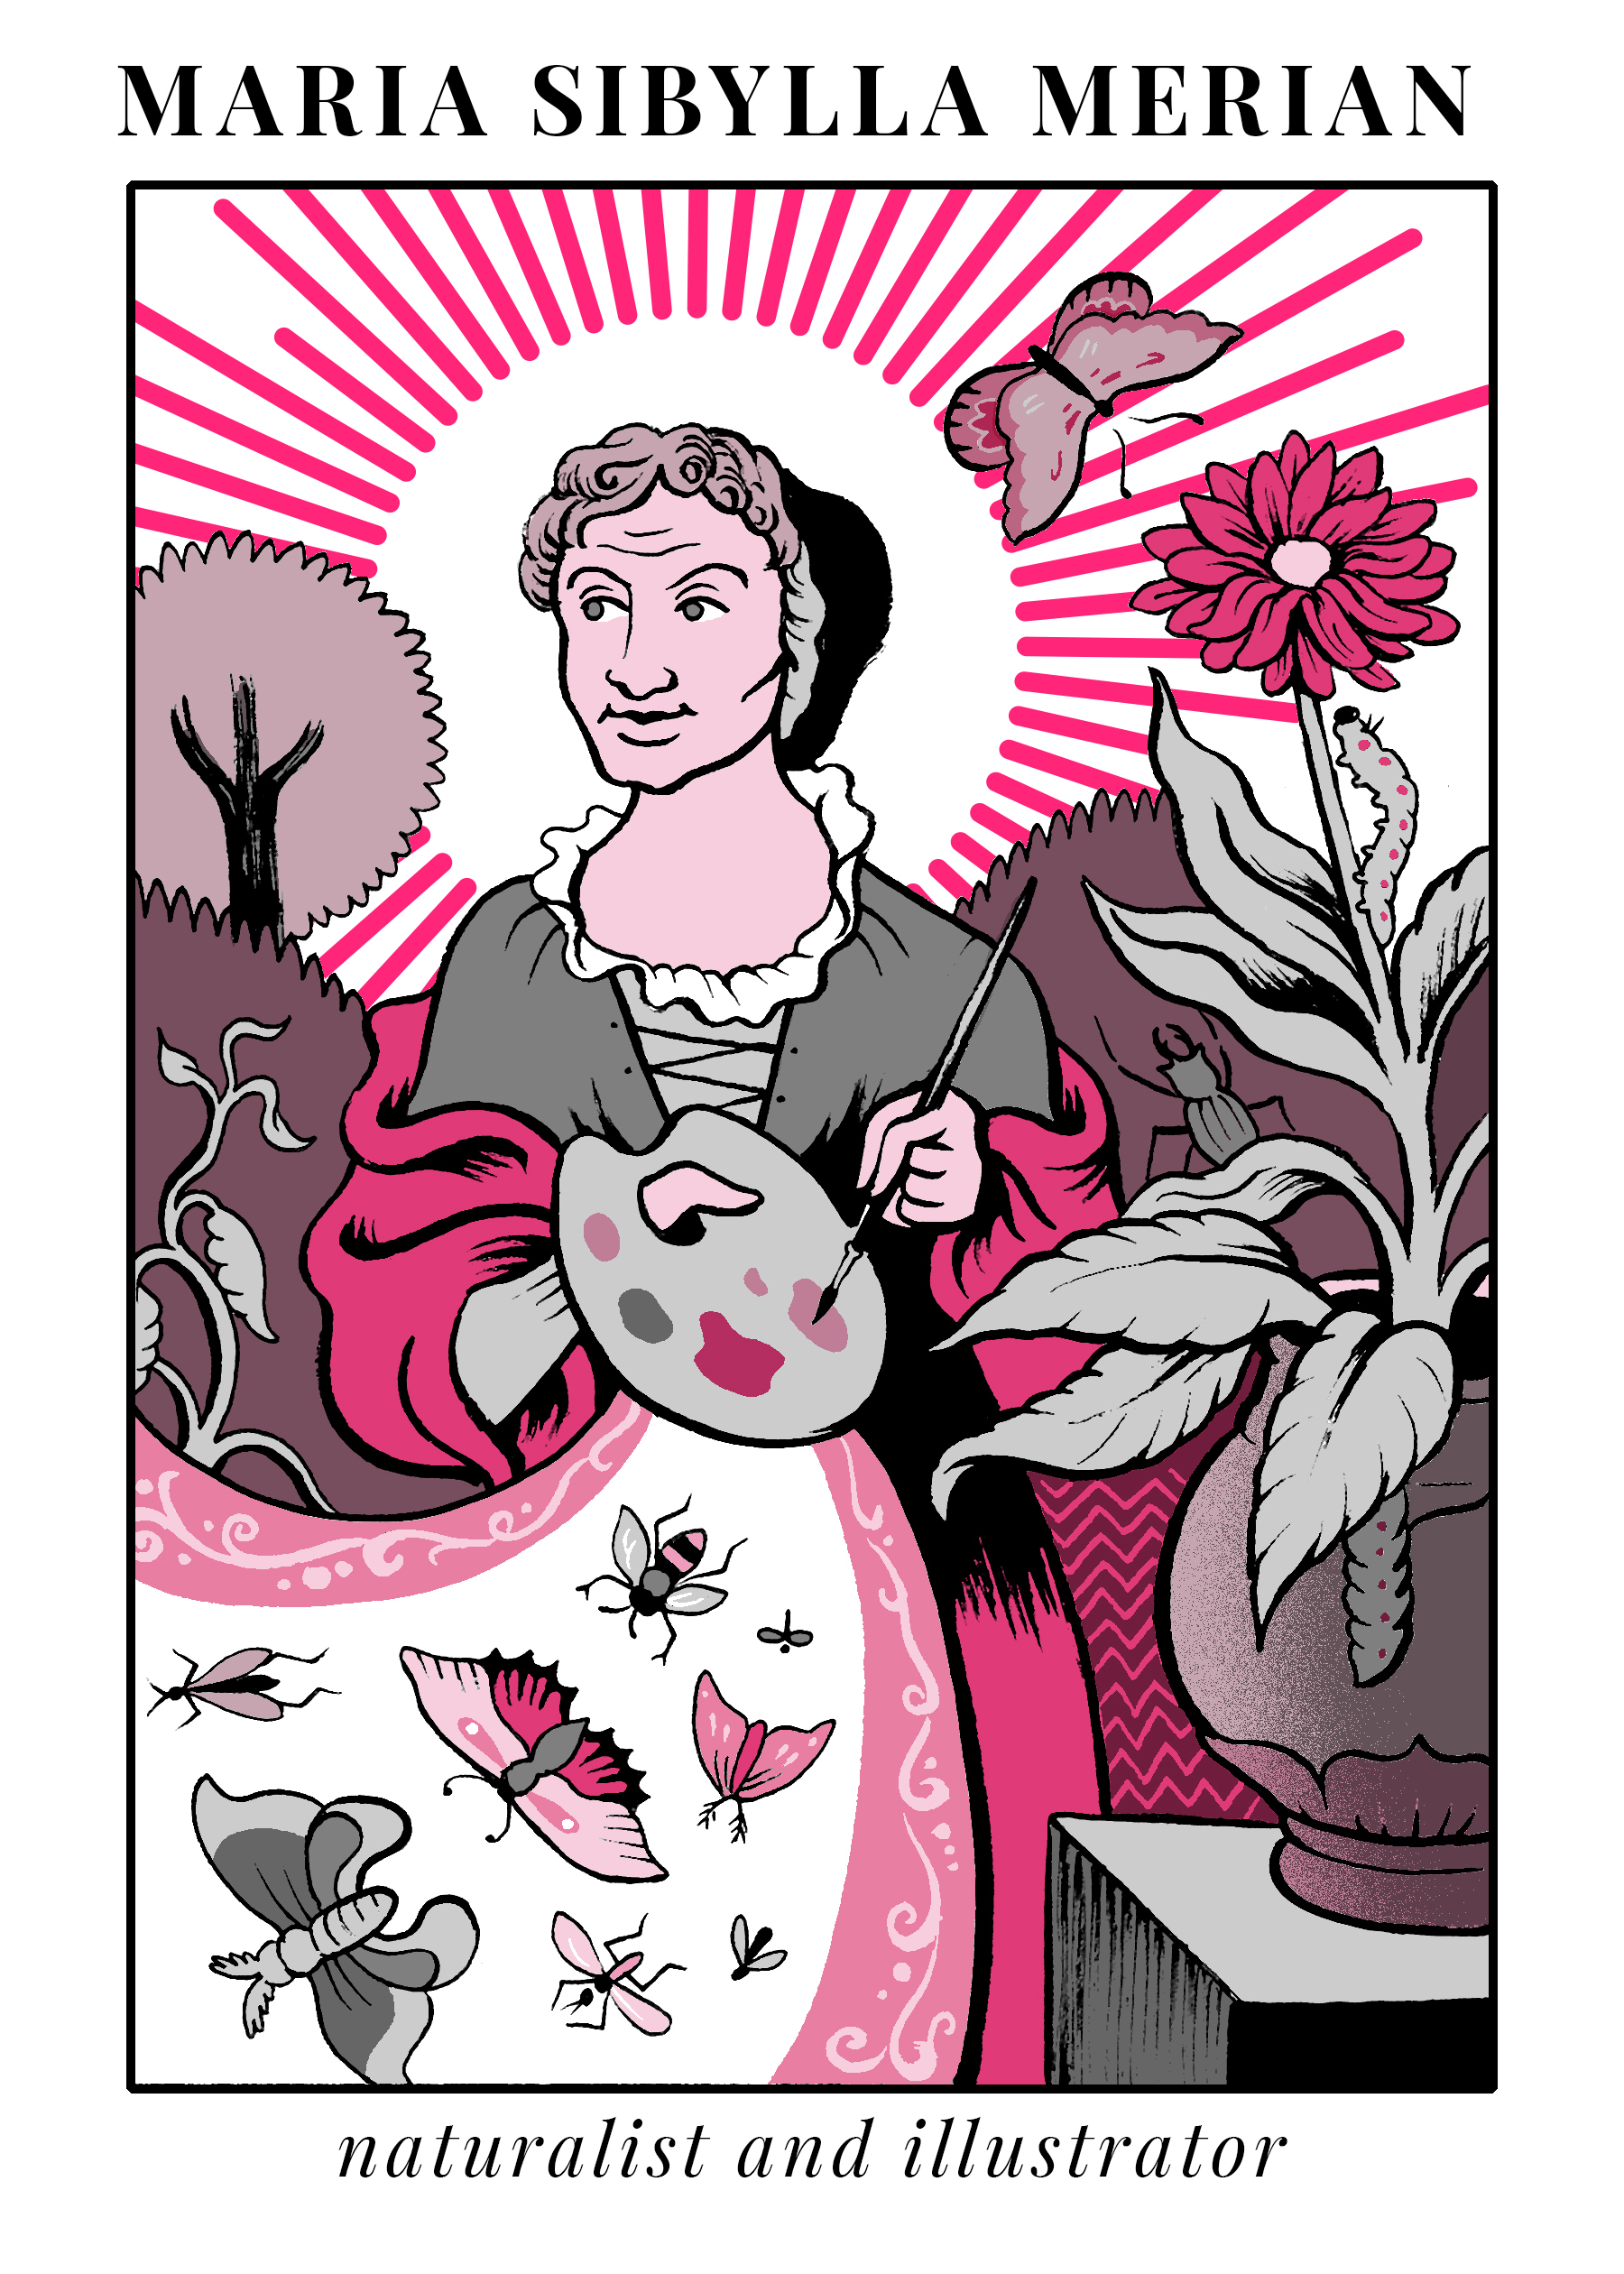 Illustration of Maria Sibylla Merian from Massive Science Tarot deck